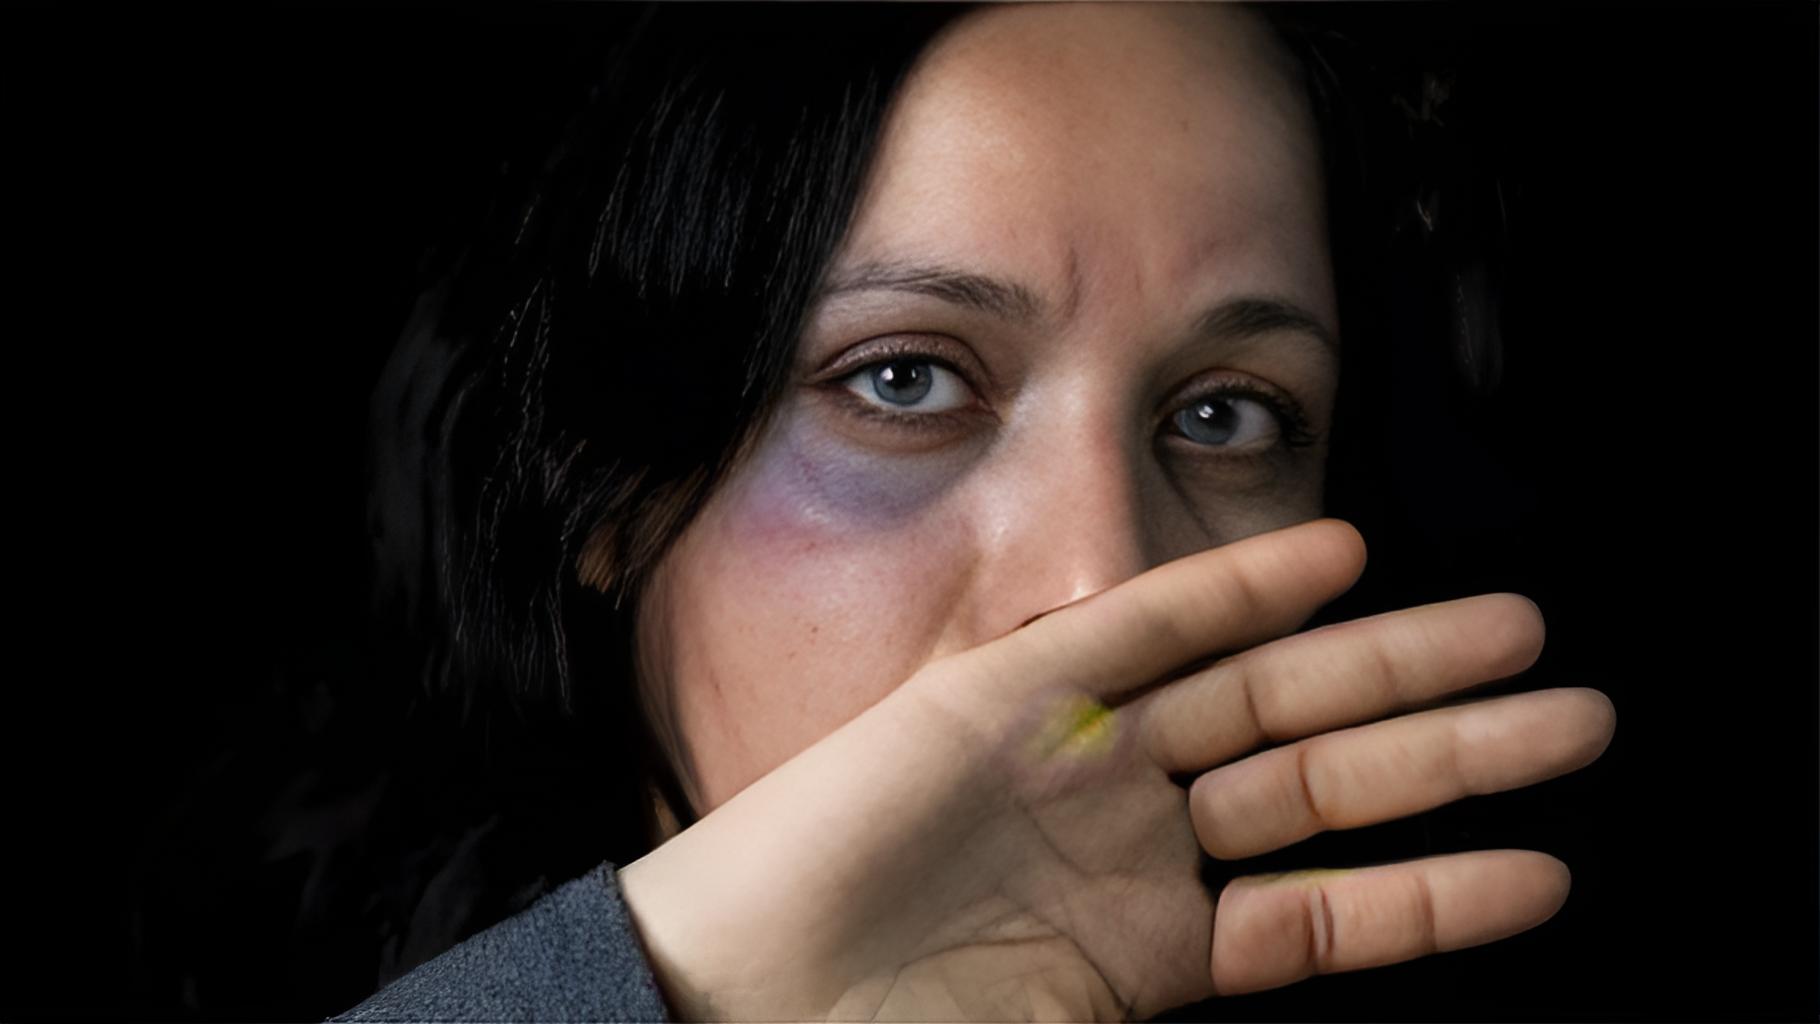 صورة تعبيرية عن العنف الأسري - "غيتي"